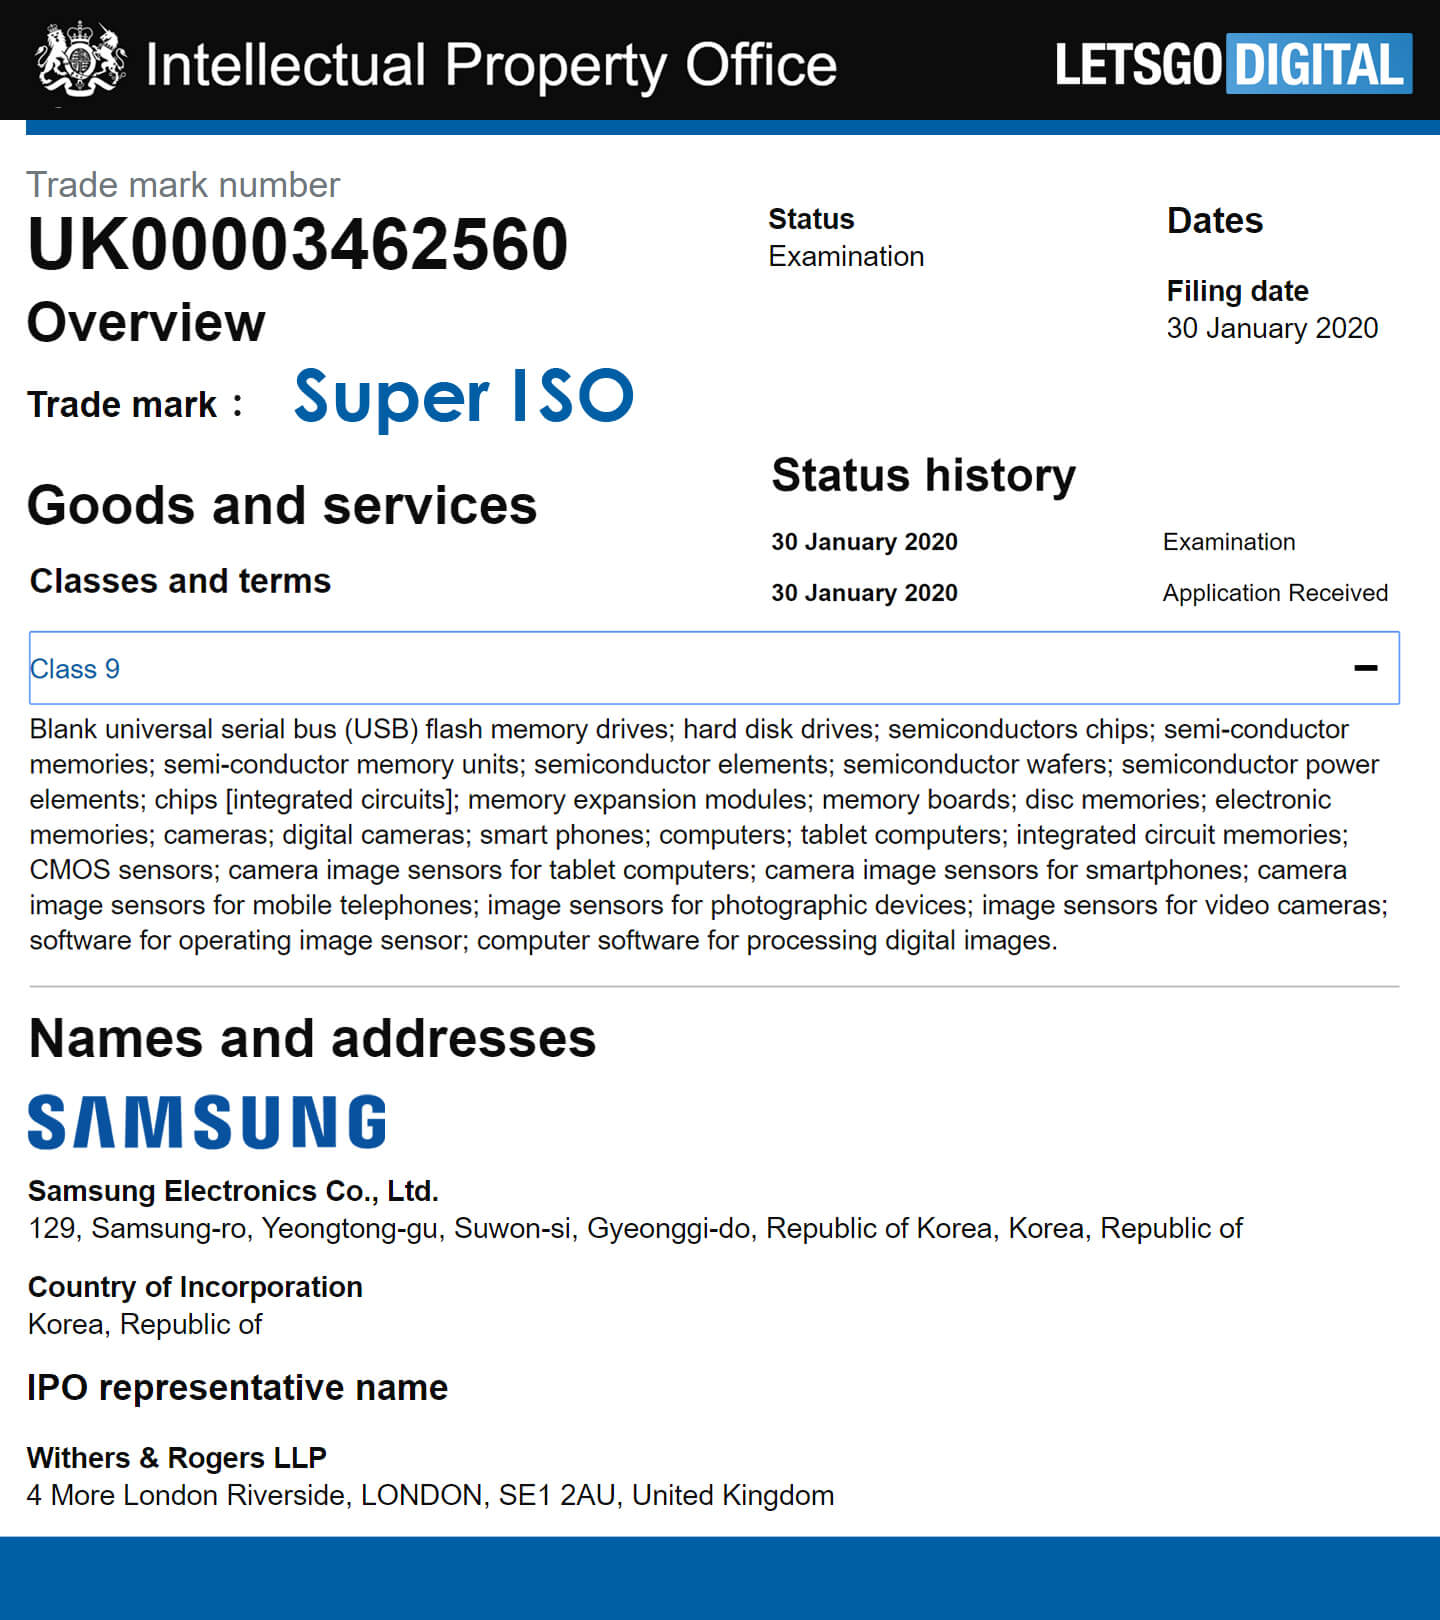 Samsung Galaxy S20 aparat Super ISO funkcje kiedy premiera plotki przecieki wycieki